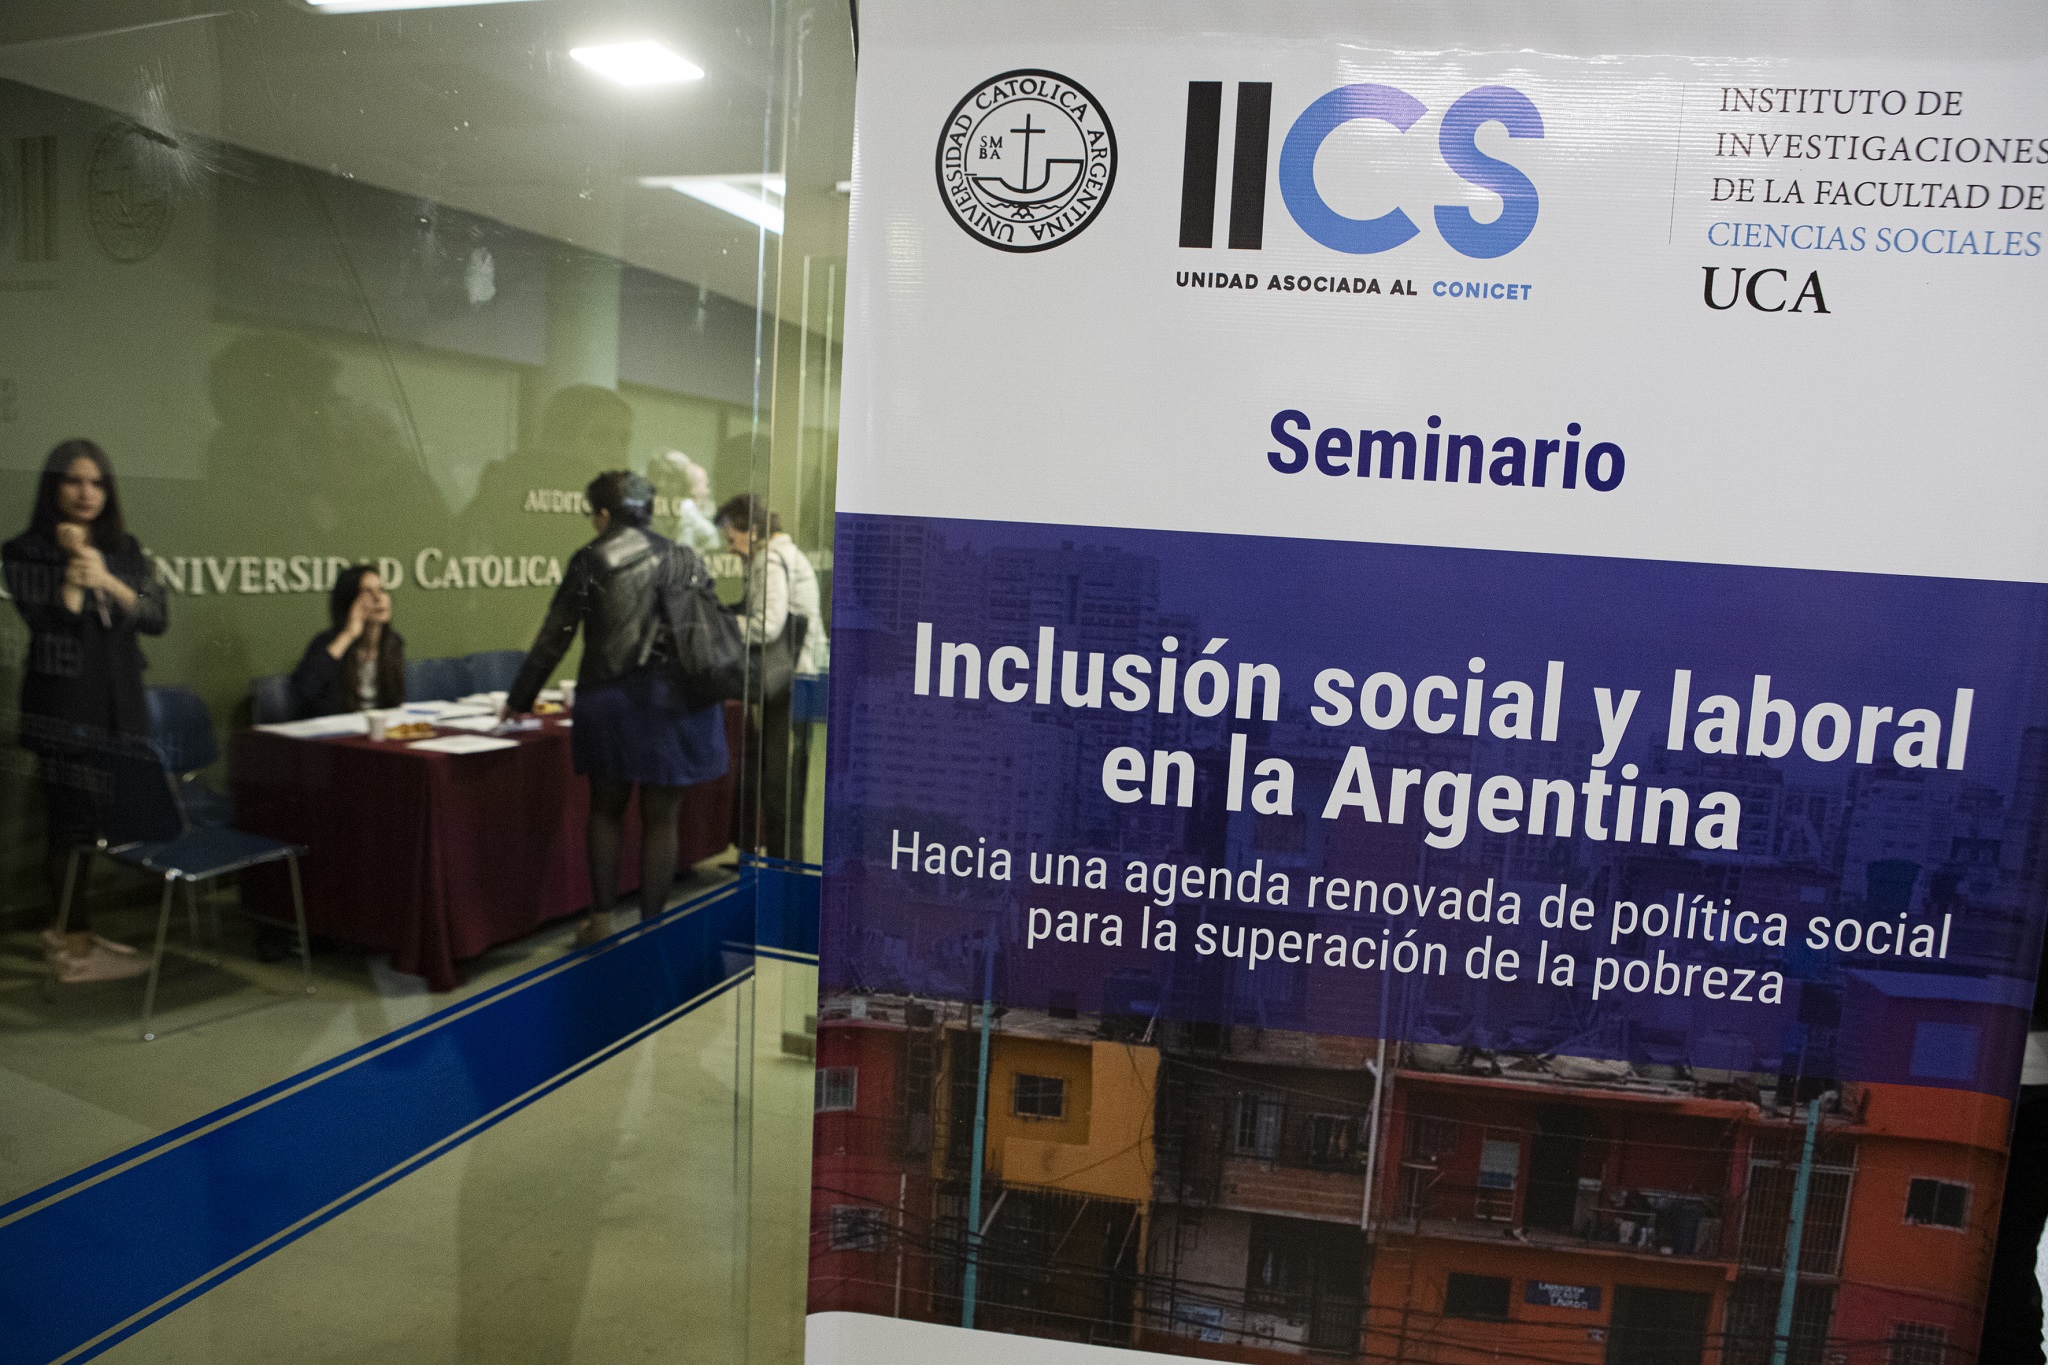 Fuente: http://uca.edu.ar/es/noticias/seminario-inclusion-social-y-laboral-en-la-argentina